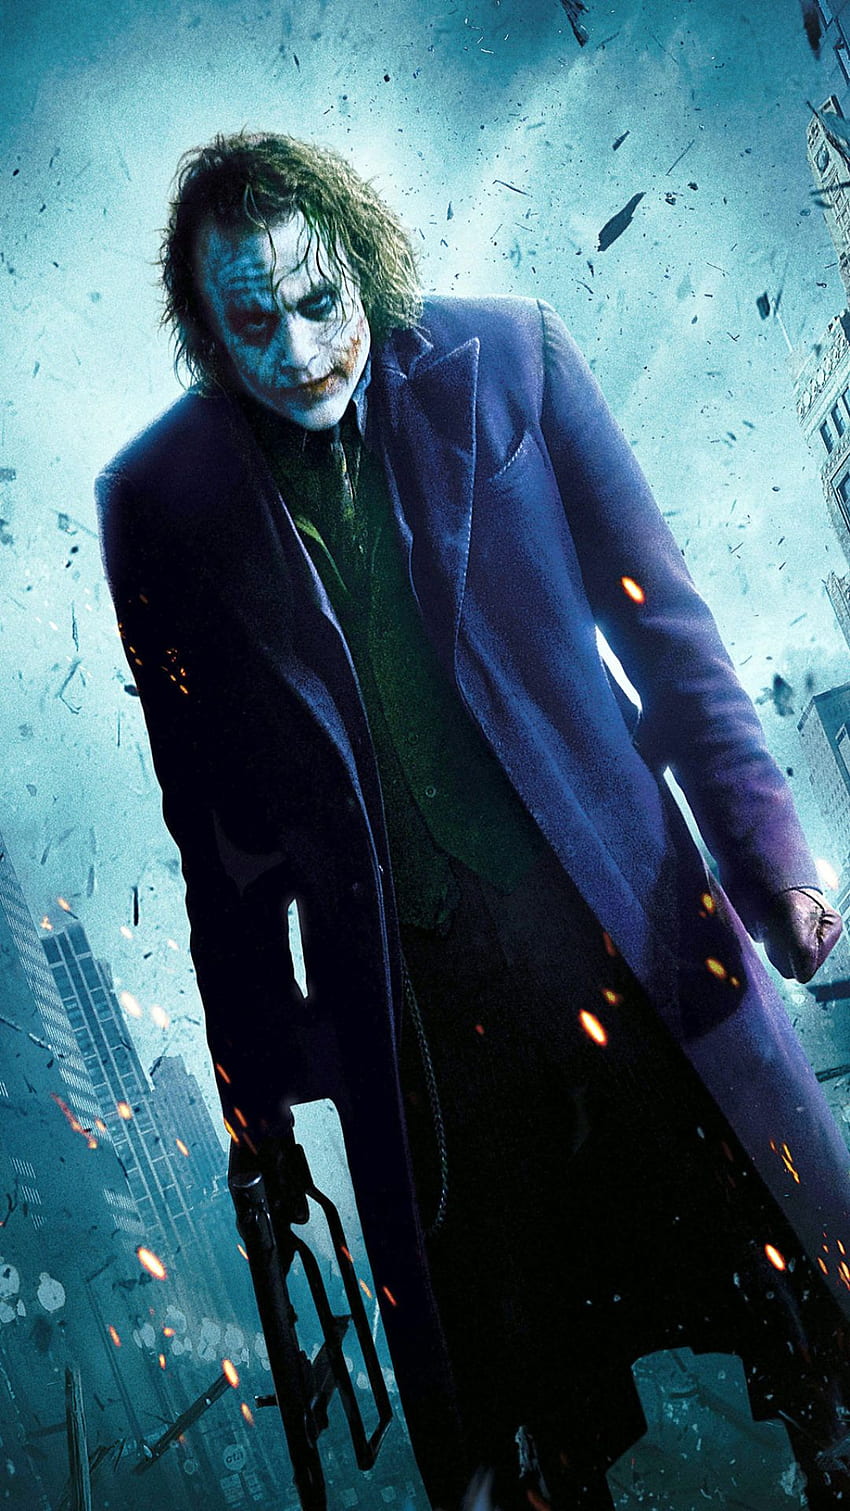 Joker For iPhone 6 - Ultra Joker -, Joker 1080x1920 HD phone wallpaper |  Pxfuel